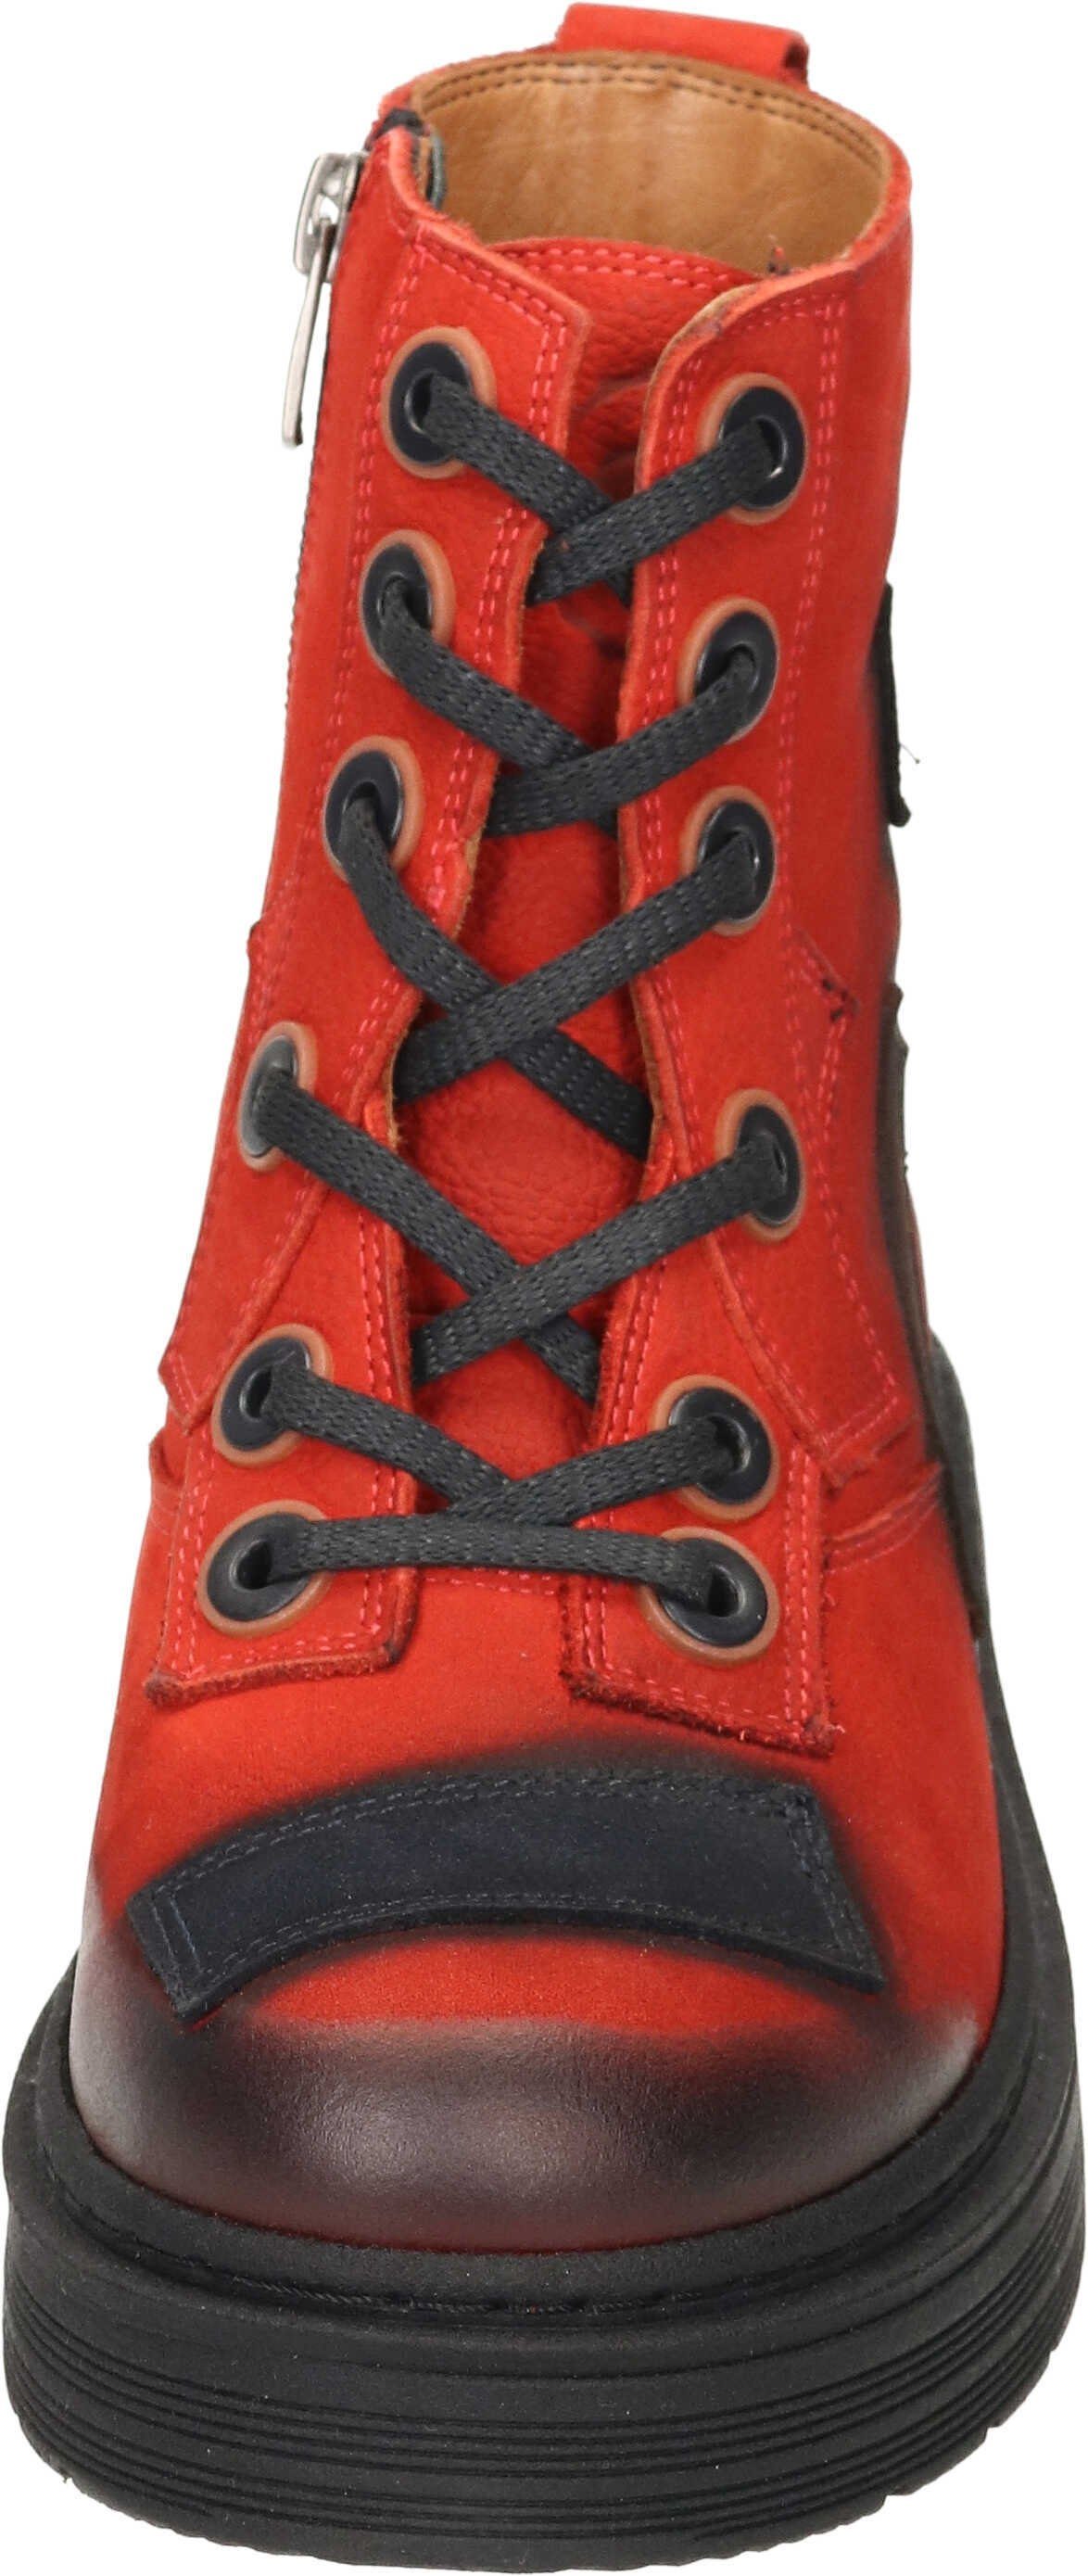 Boots Manitu Schnürstiefelette Nubukleder rot aus